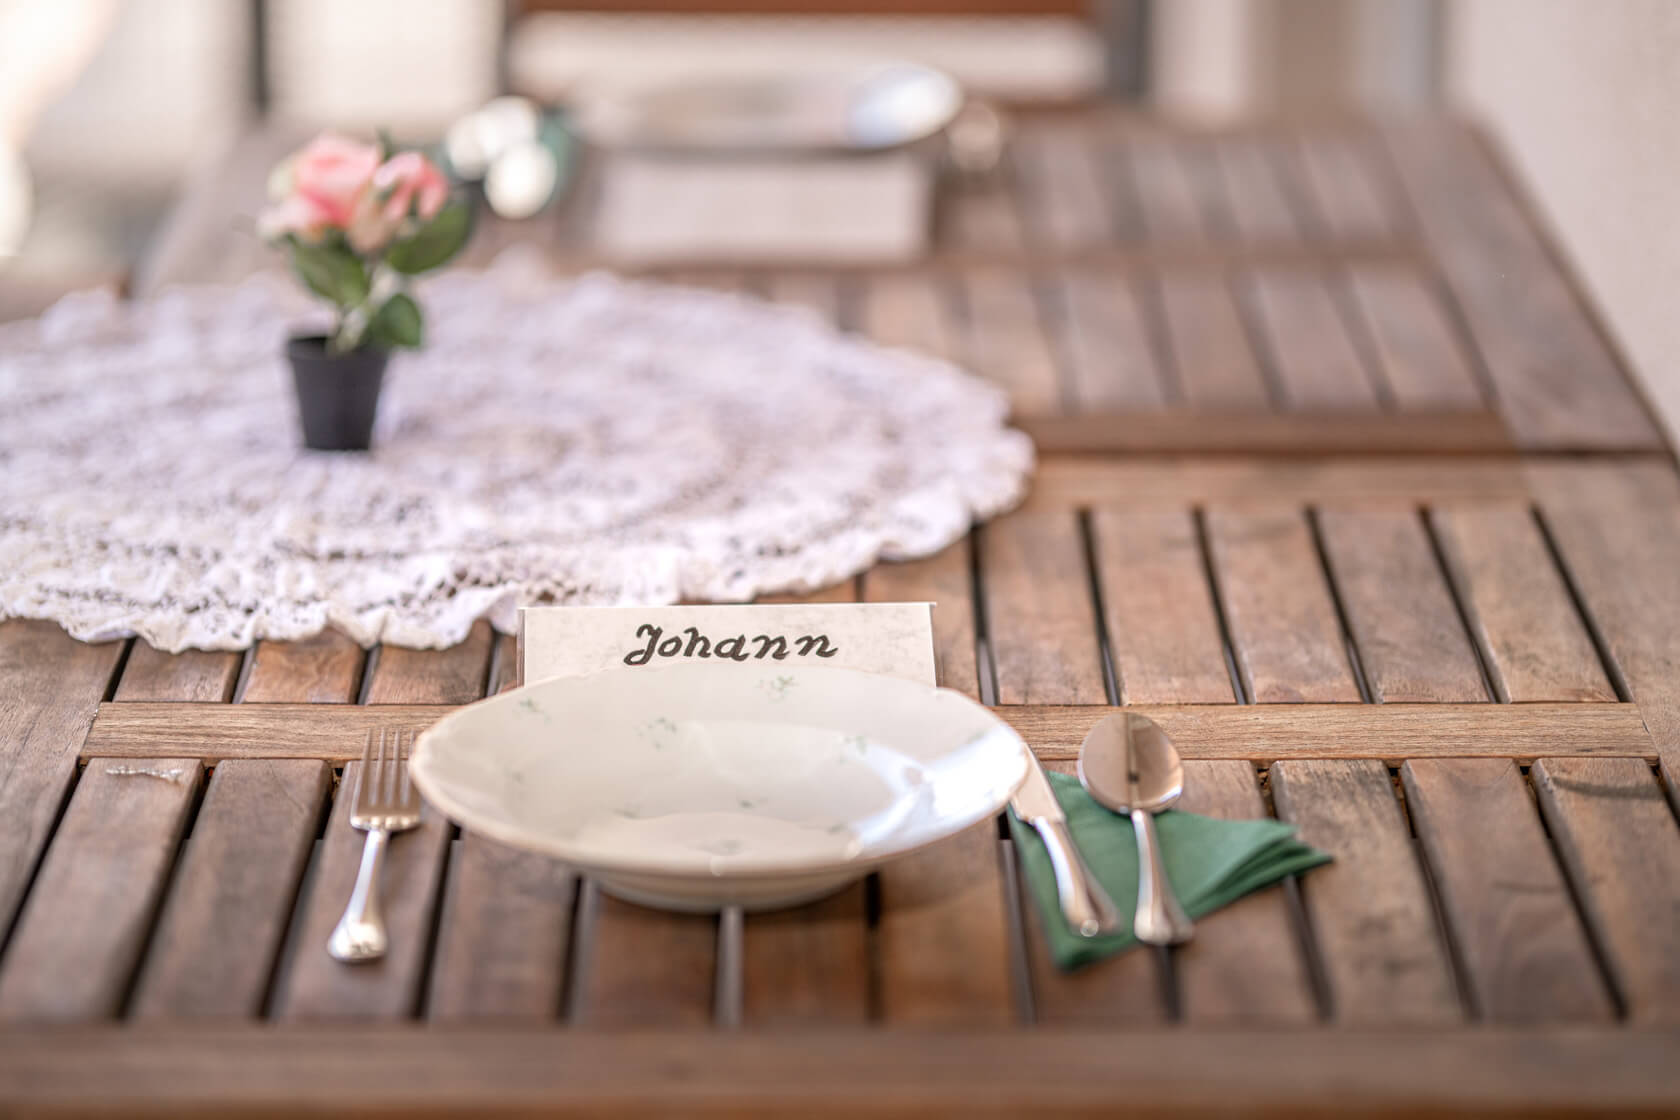 Ein Teller steht auf einem liebevoll dekorierten Holztisch und vor ihm steht ein Namensschild auf dem der Name Johann geschrieben steht.